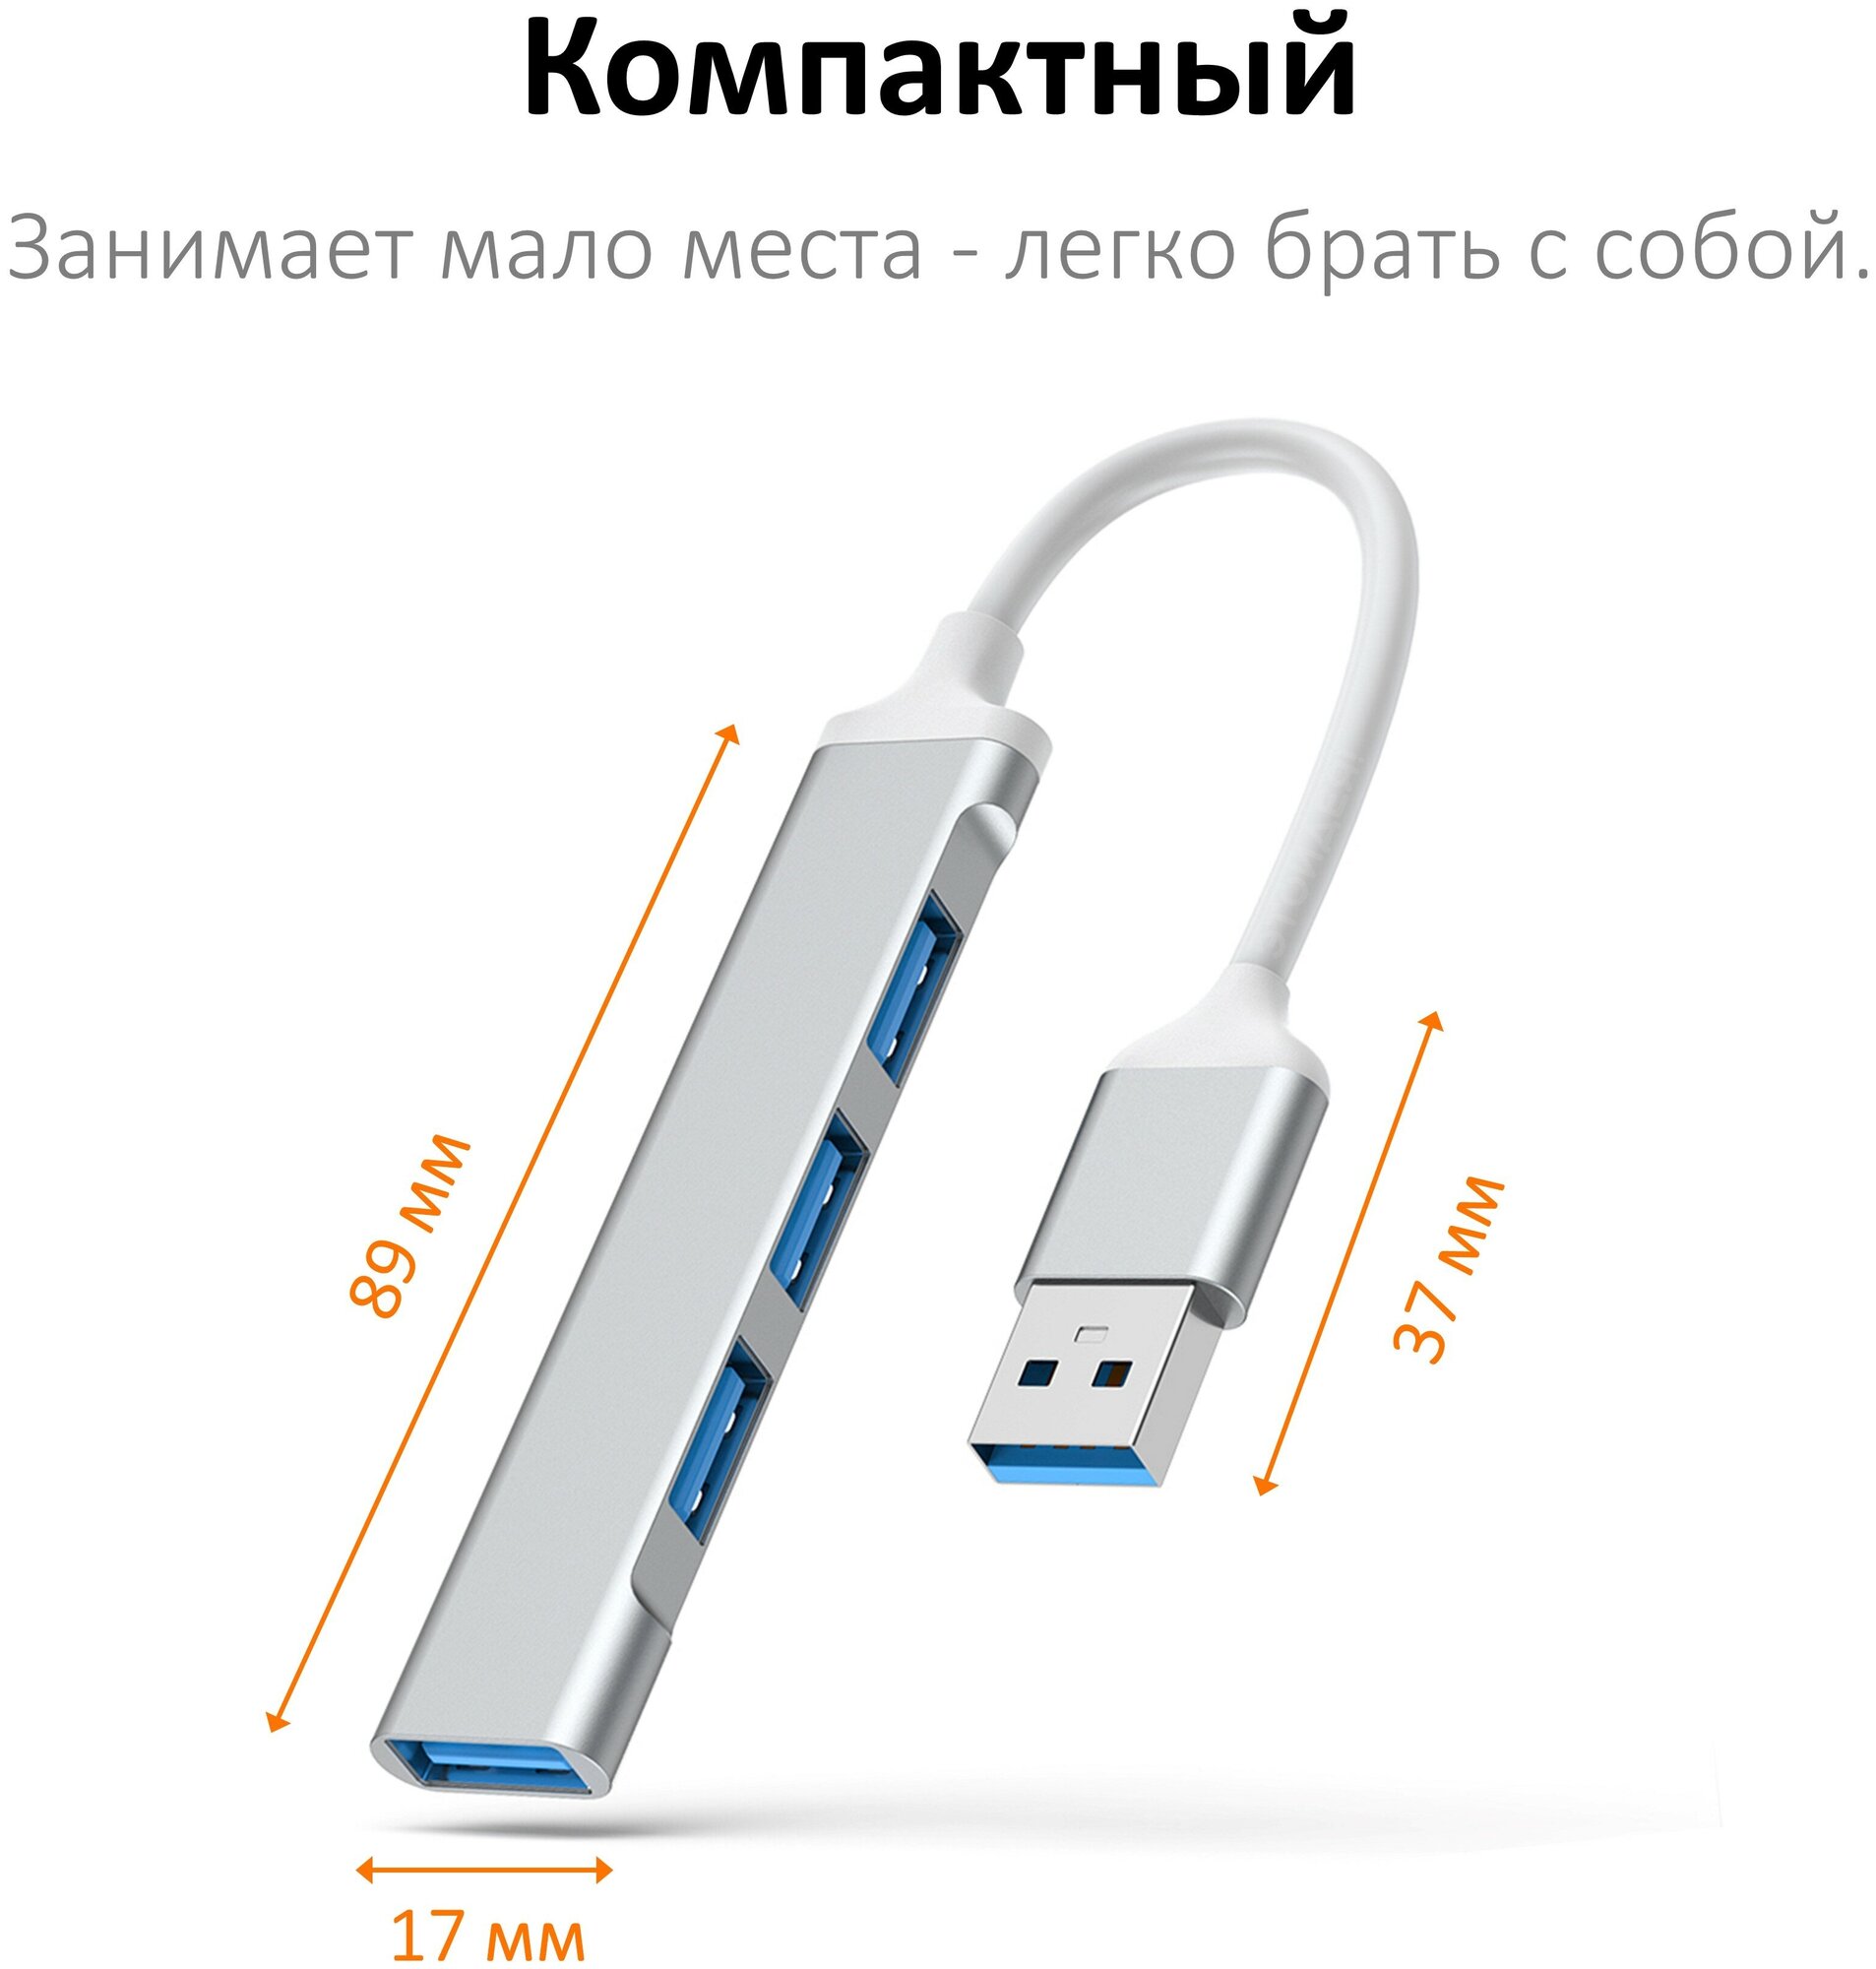 Мини USB хаб на 4 порта (USB 3.0 и 2.0), серебристый / переходник USB-A для ноутбука / NOBUS